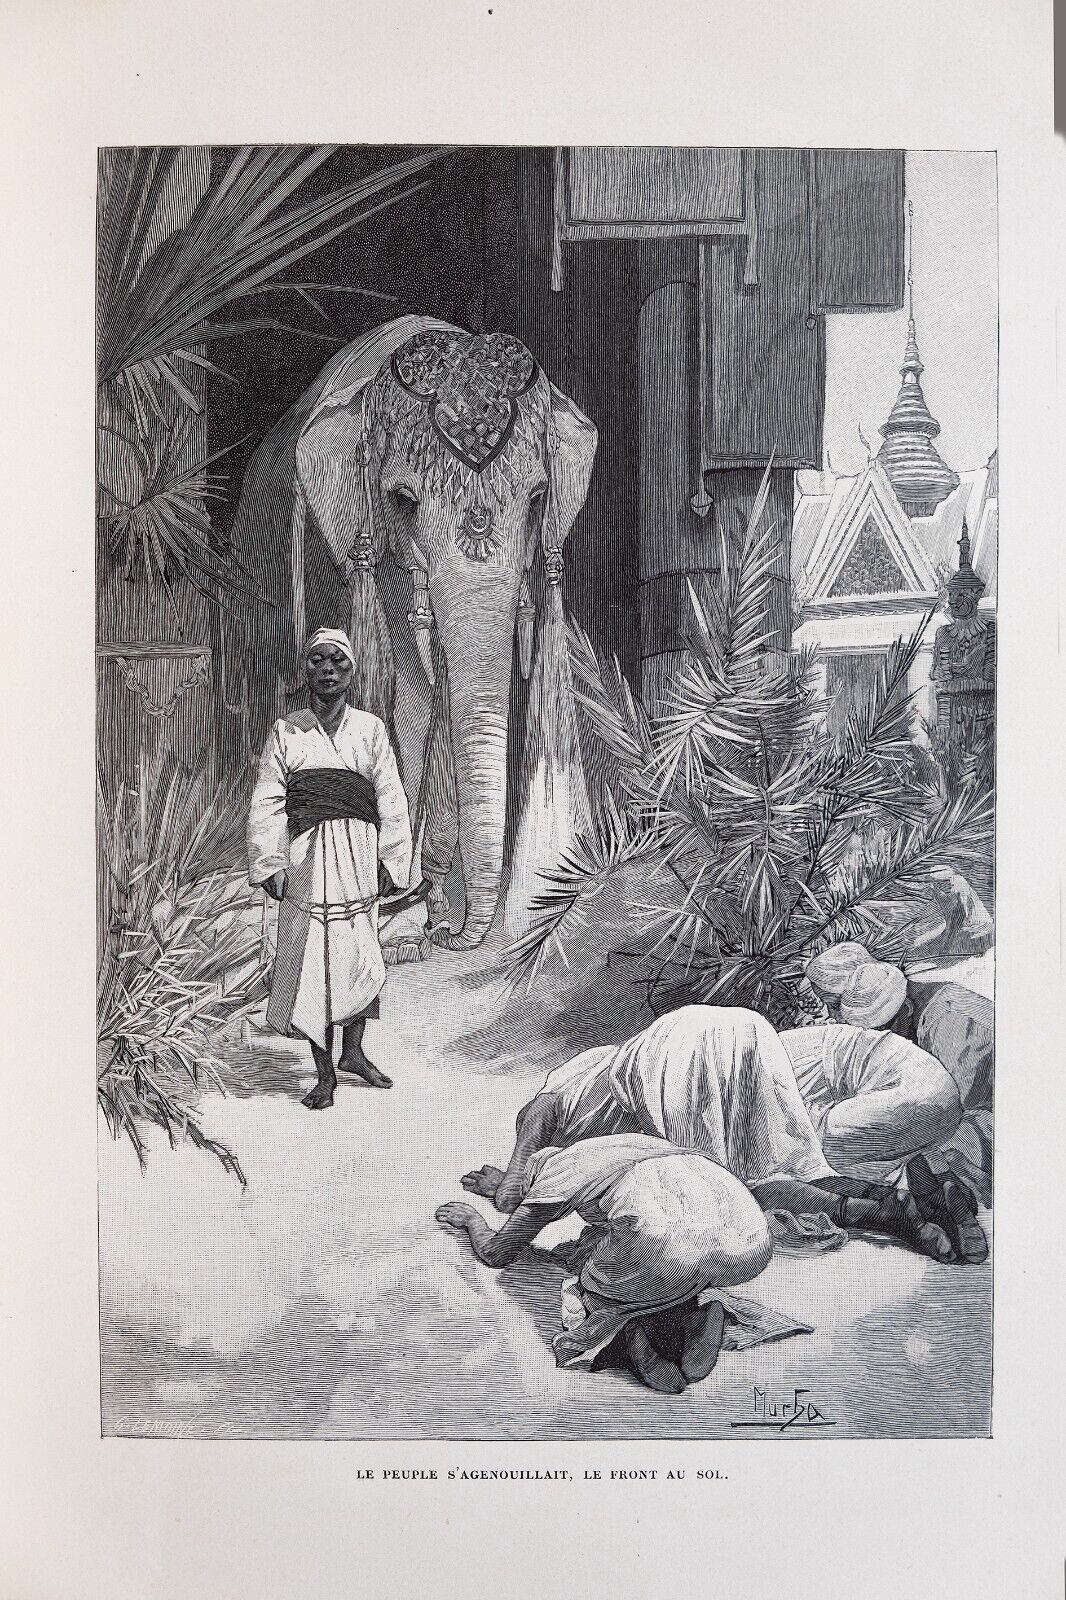 アルフォンス・ミュシャ 挿画本「白い象の伝説」 | ギャラリーK